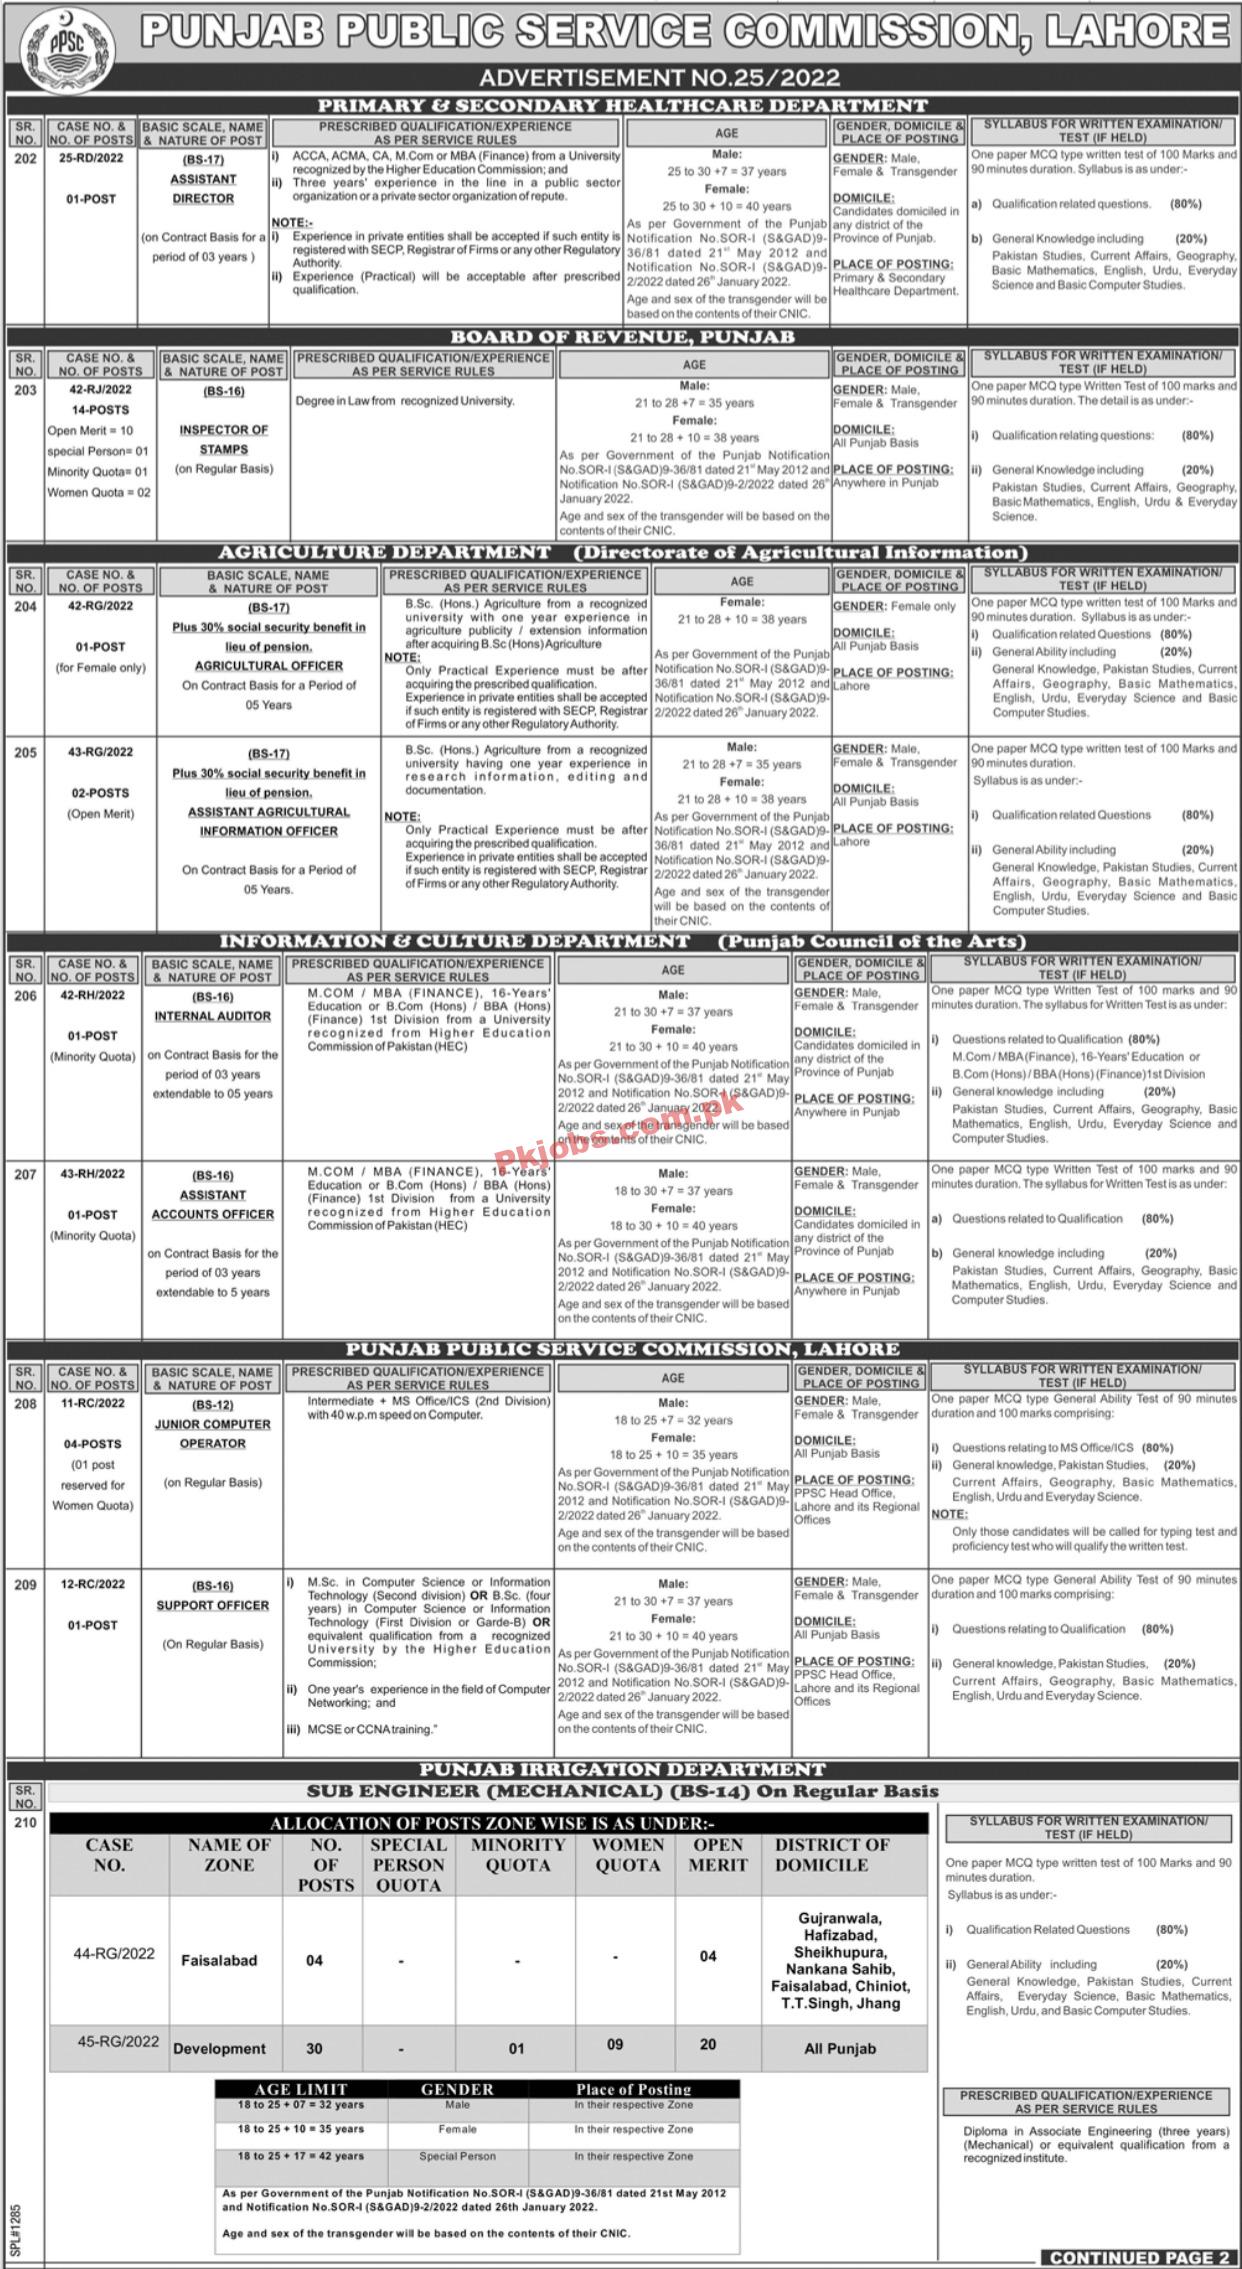 PPSC Jobs 2022 | Punjab Public Service Commission PPSC Headquarters Announced Latest Recruitment Jobs 2022